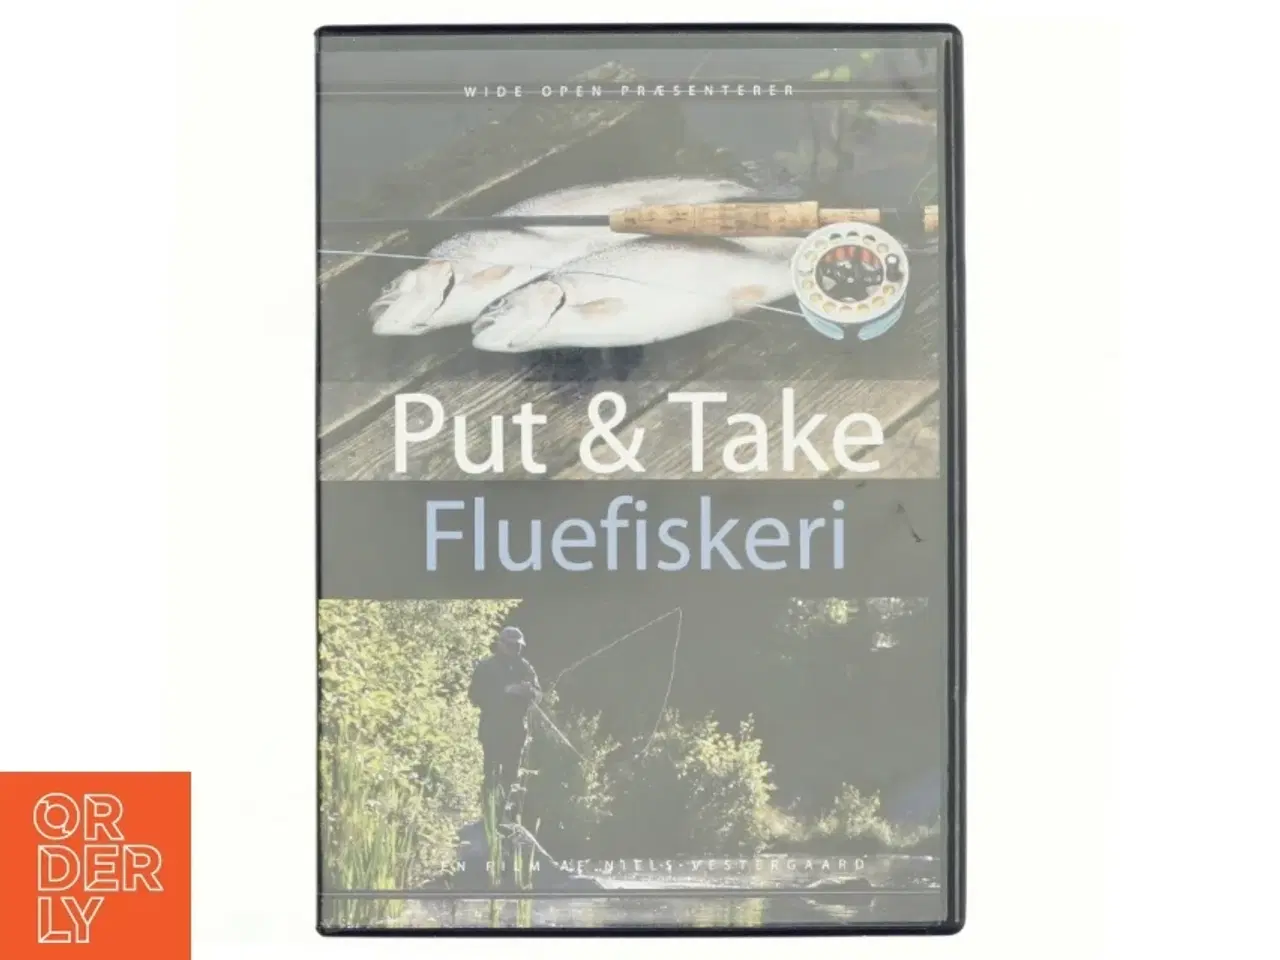 Billede 1 - Put & take fluefiskeri